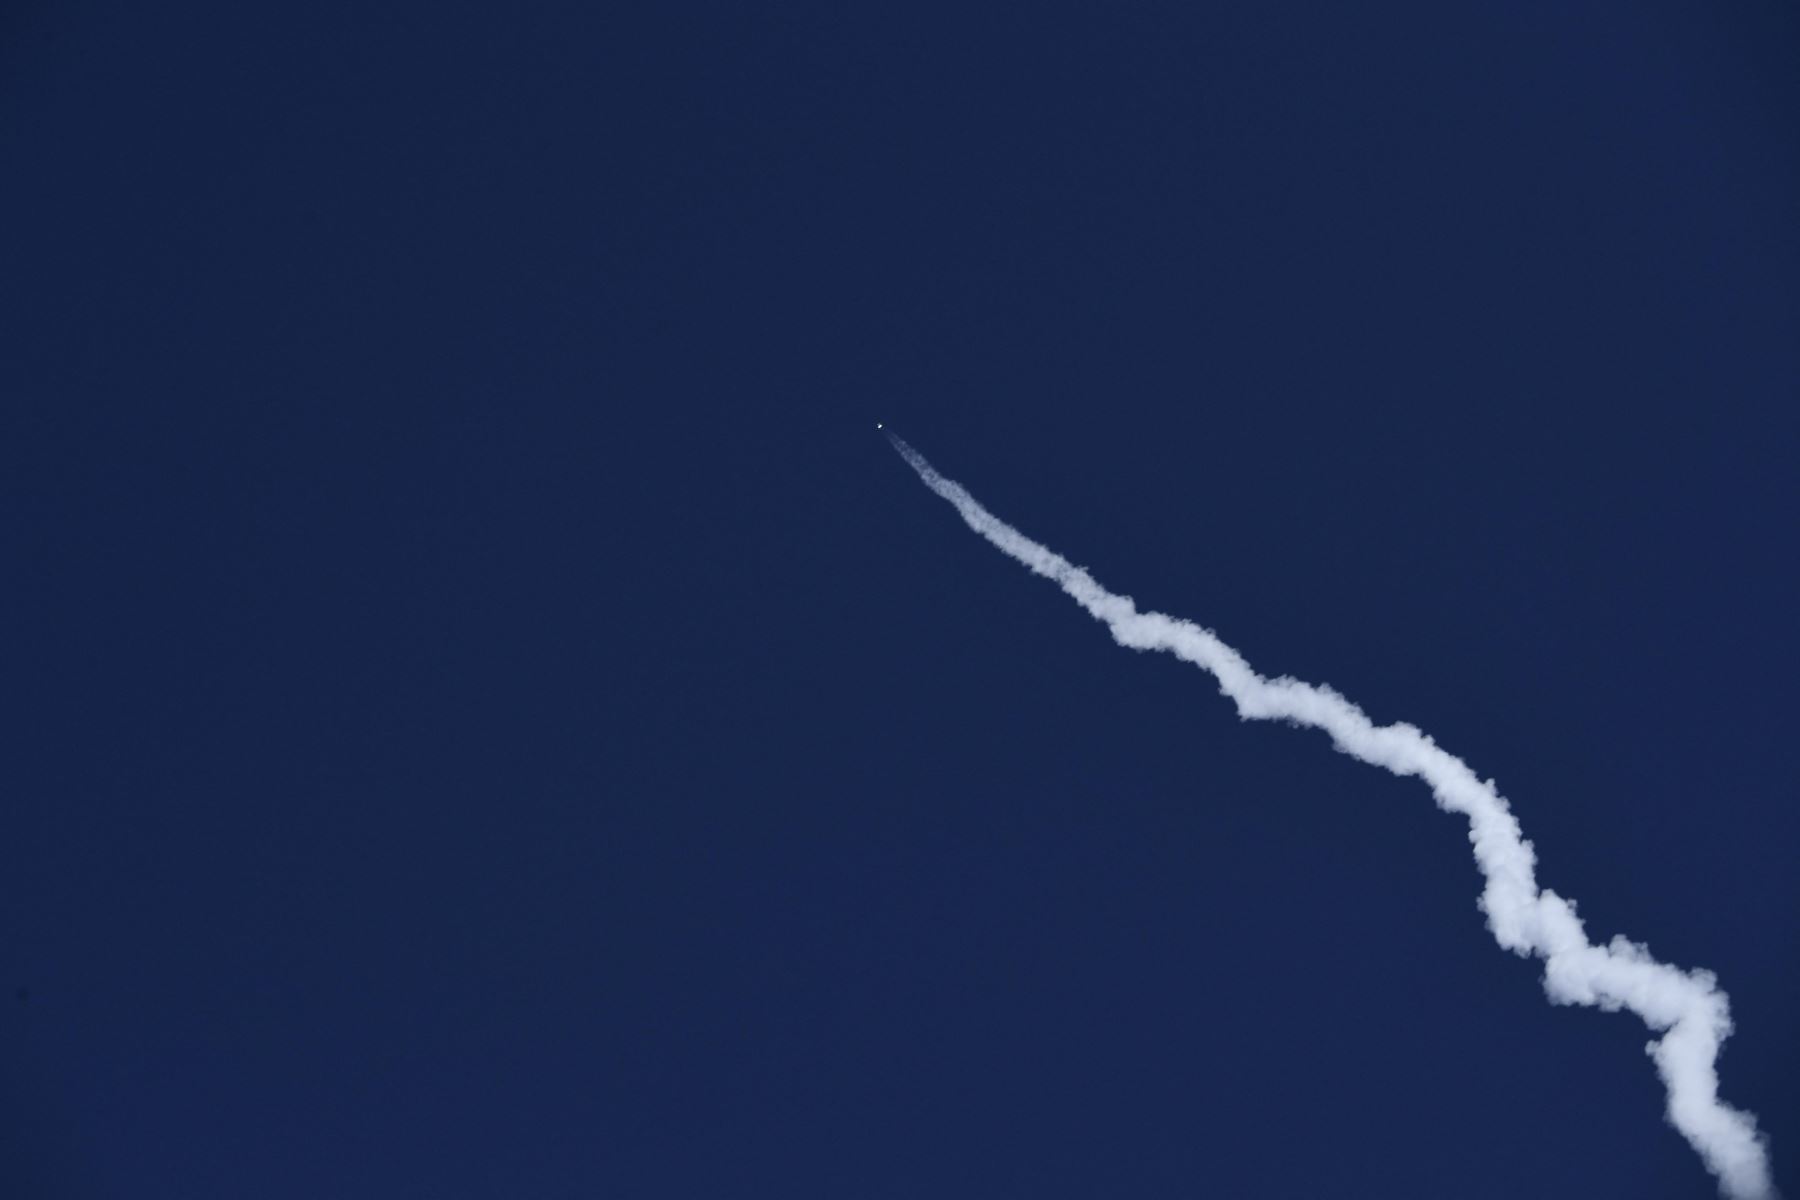 Lanzamiento del cohete New Shepard de Blue Origin se lanza en Texas. La misión NS-20 lleva al arquitecto jefe de New Shepard de Blue Origin Gary Lai, Marty Allen, Sharon Hagle, Marc Hagle, Jim Kitchen y el Dr. George Nield al espacio. Foto: AFP